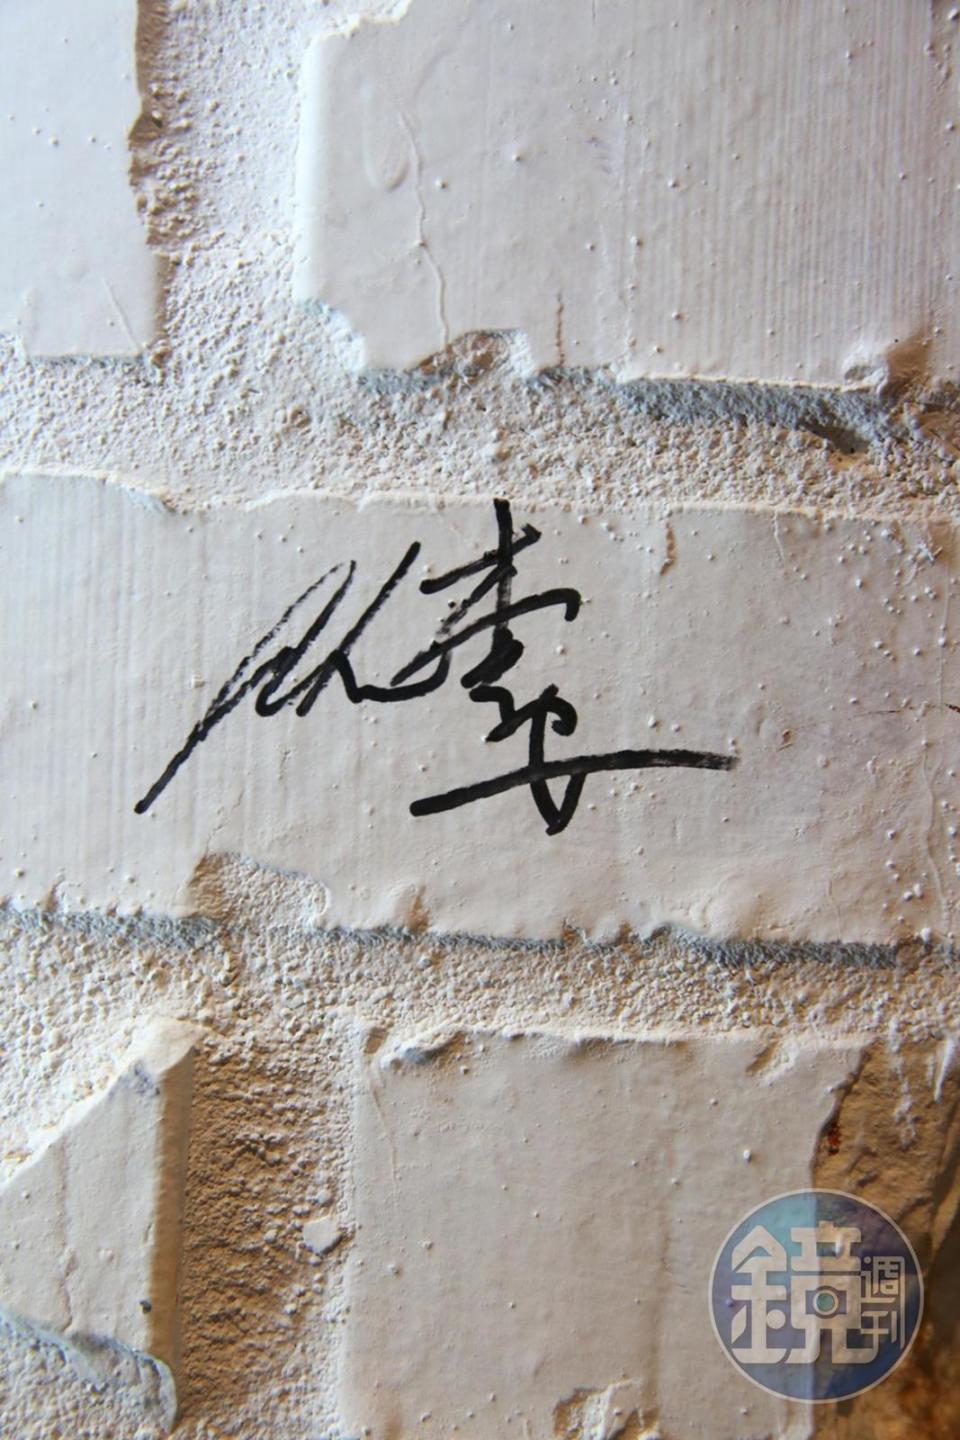 國際大導演李安是餐廳開幕的第一位貴賓，在牆上留下珍貴簽名。